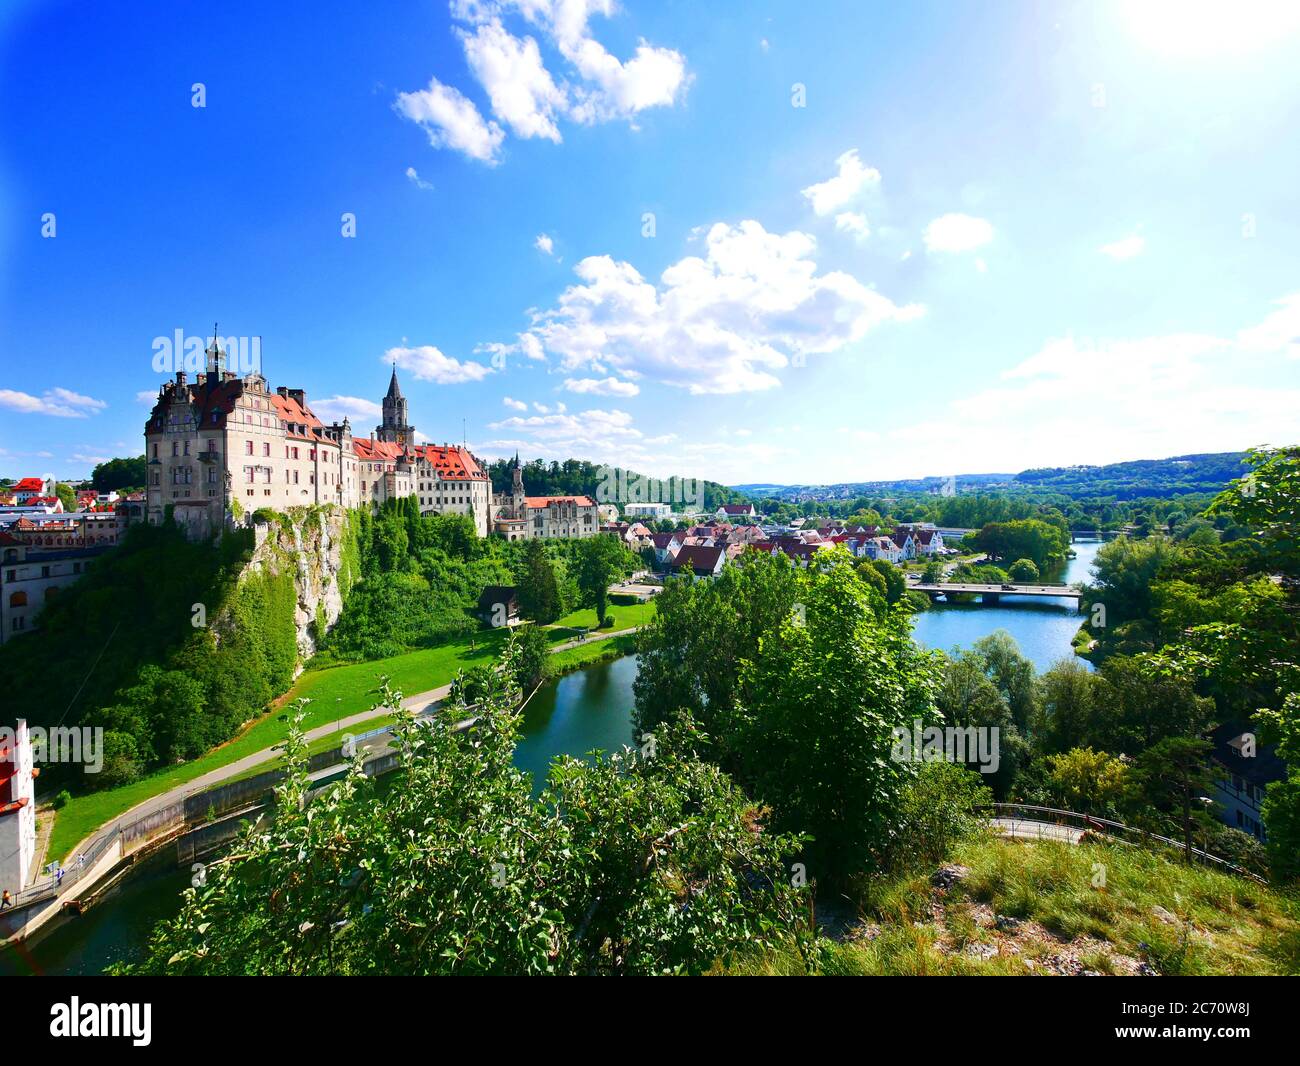 Sigmaringen, Allemagne: Paysage urbain avec le château en vue Banque D'Images